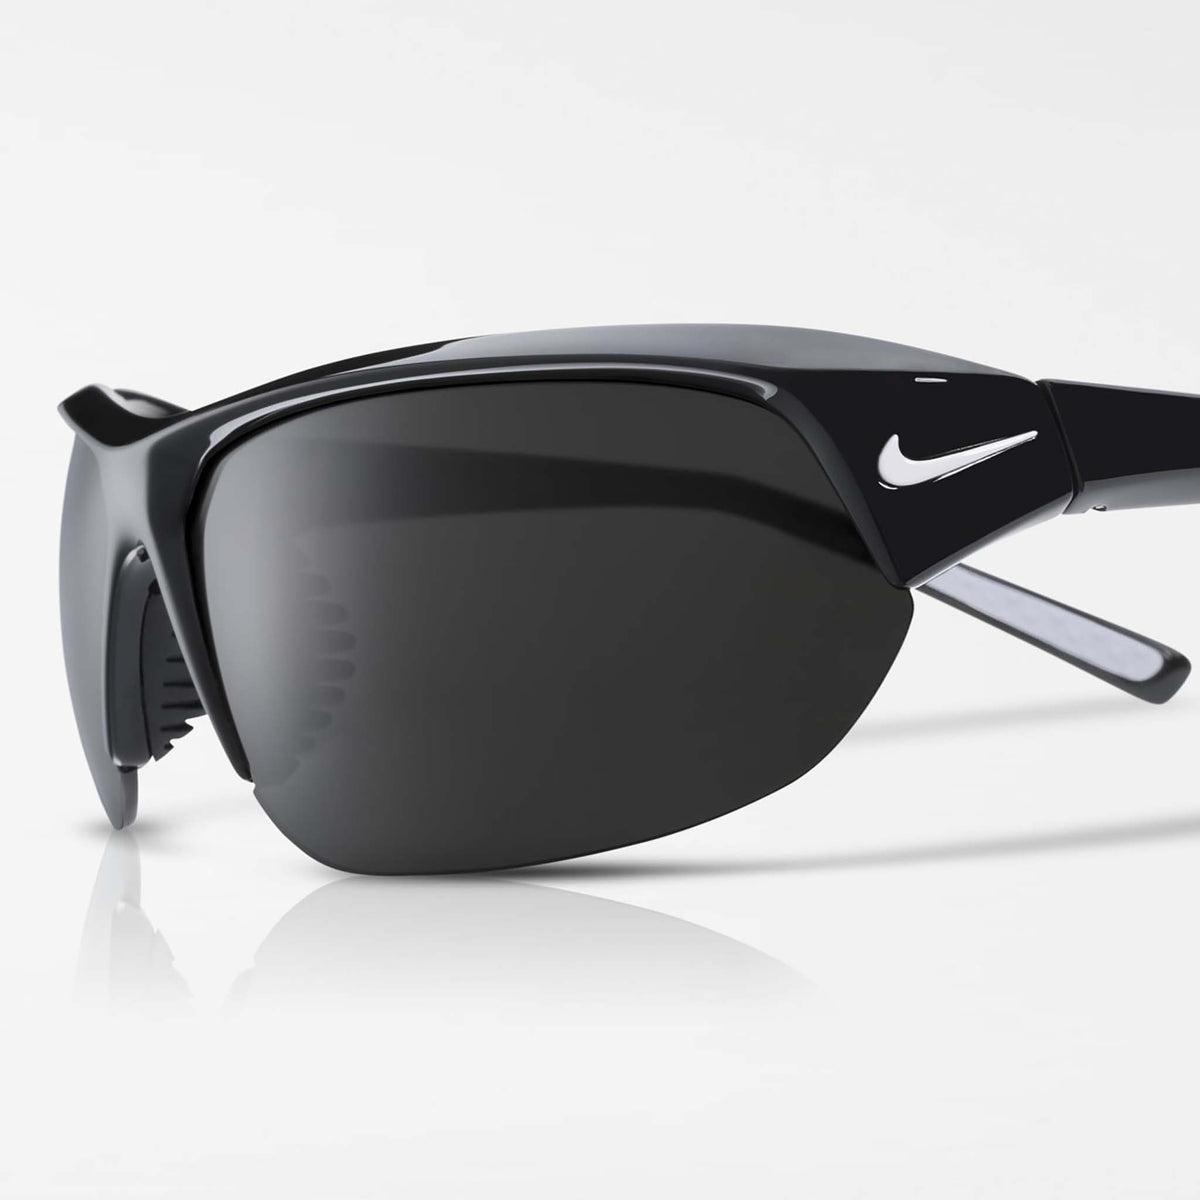 Nike Skylon Ace lunettes de soleil sport noir gris verre